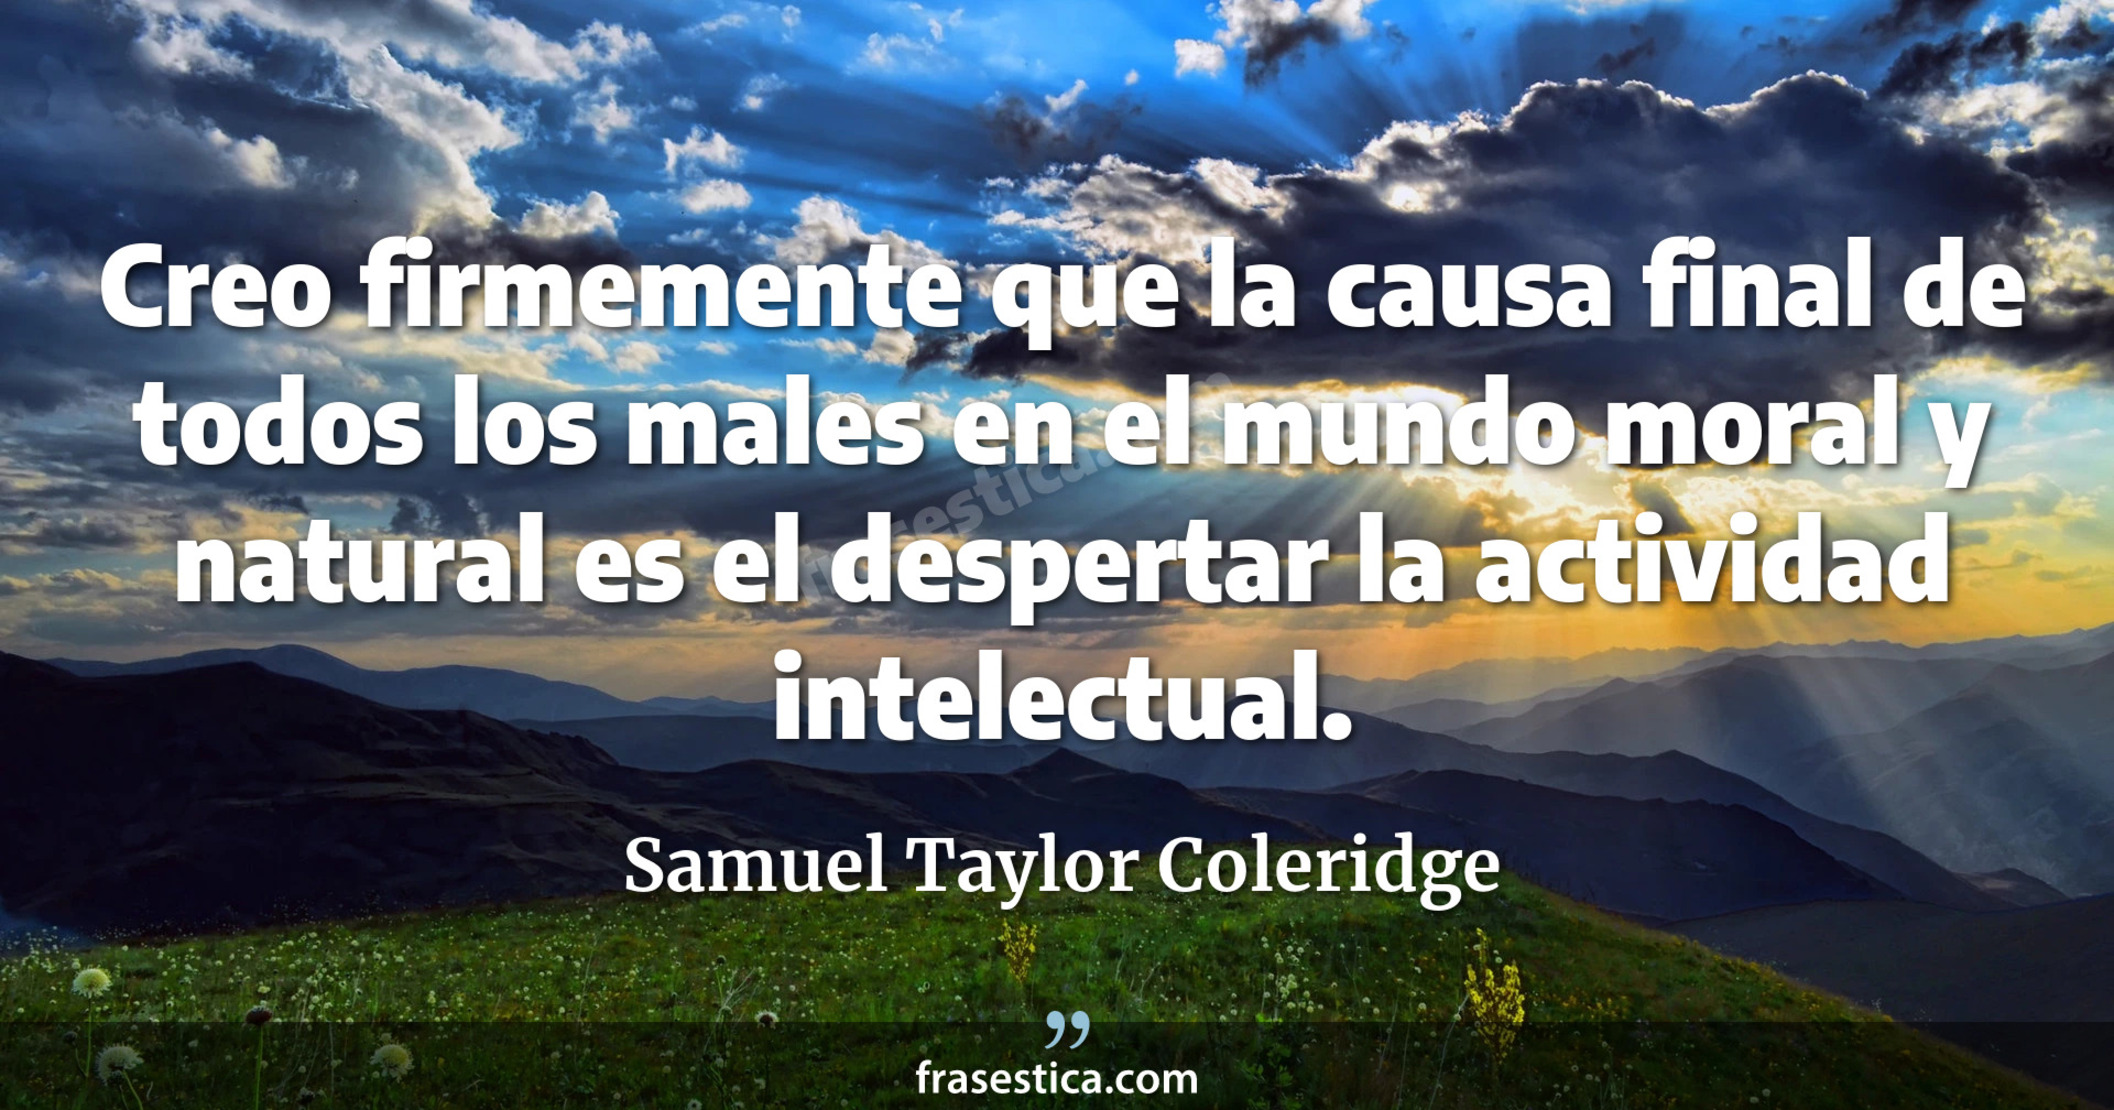 Creo firmemente que la causa final de todos los males en el mundo moral y natural es el despertar la actividad intelectual. - Samuel Taylor Coleridge